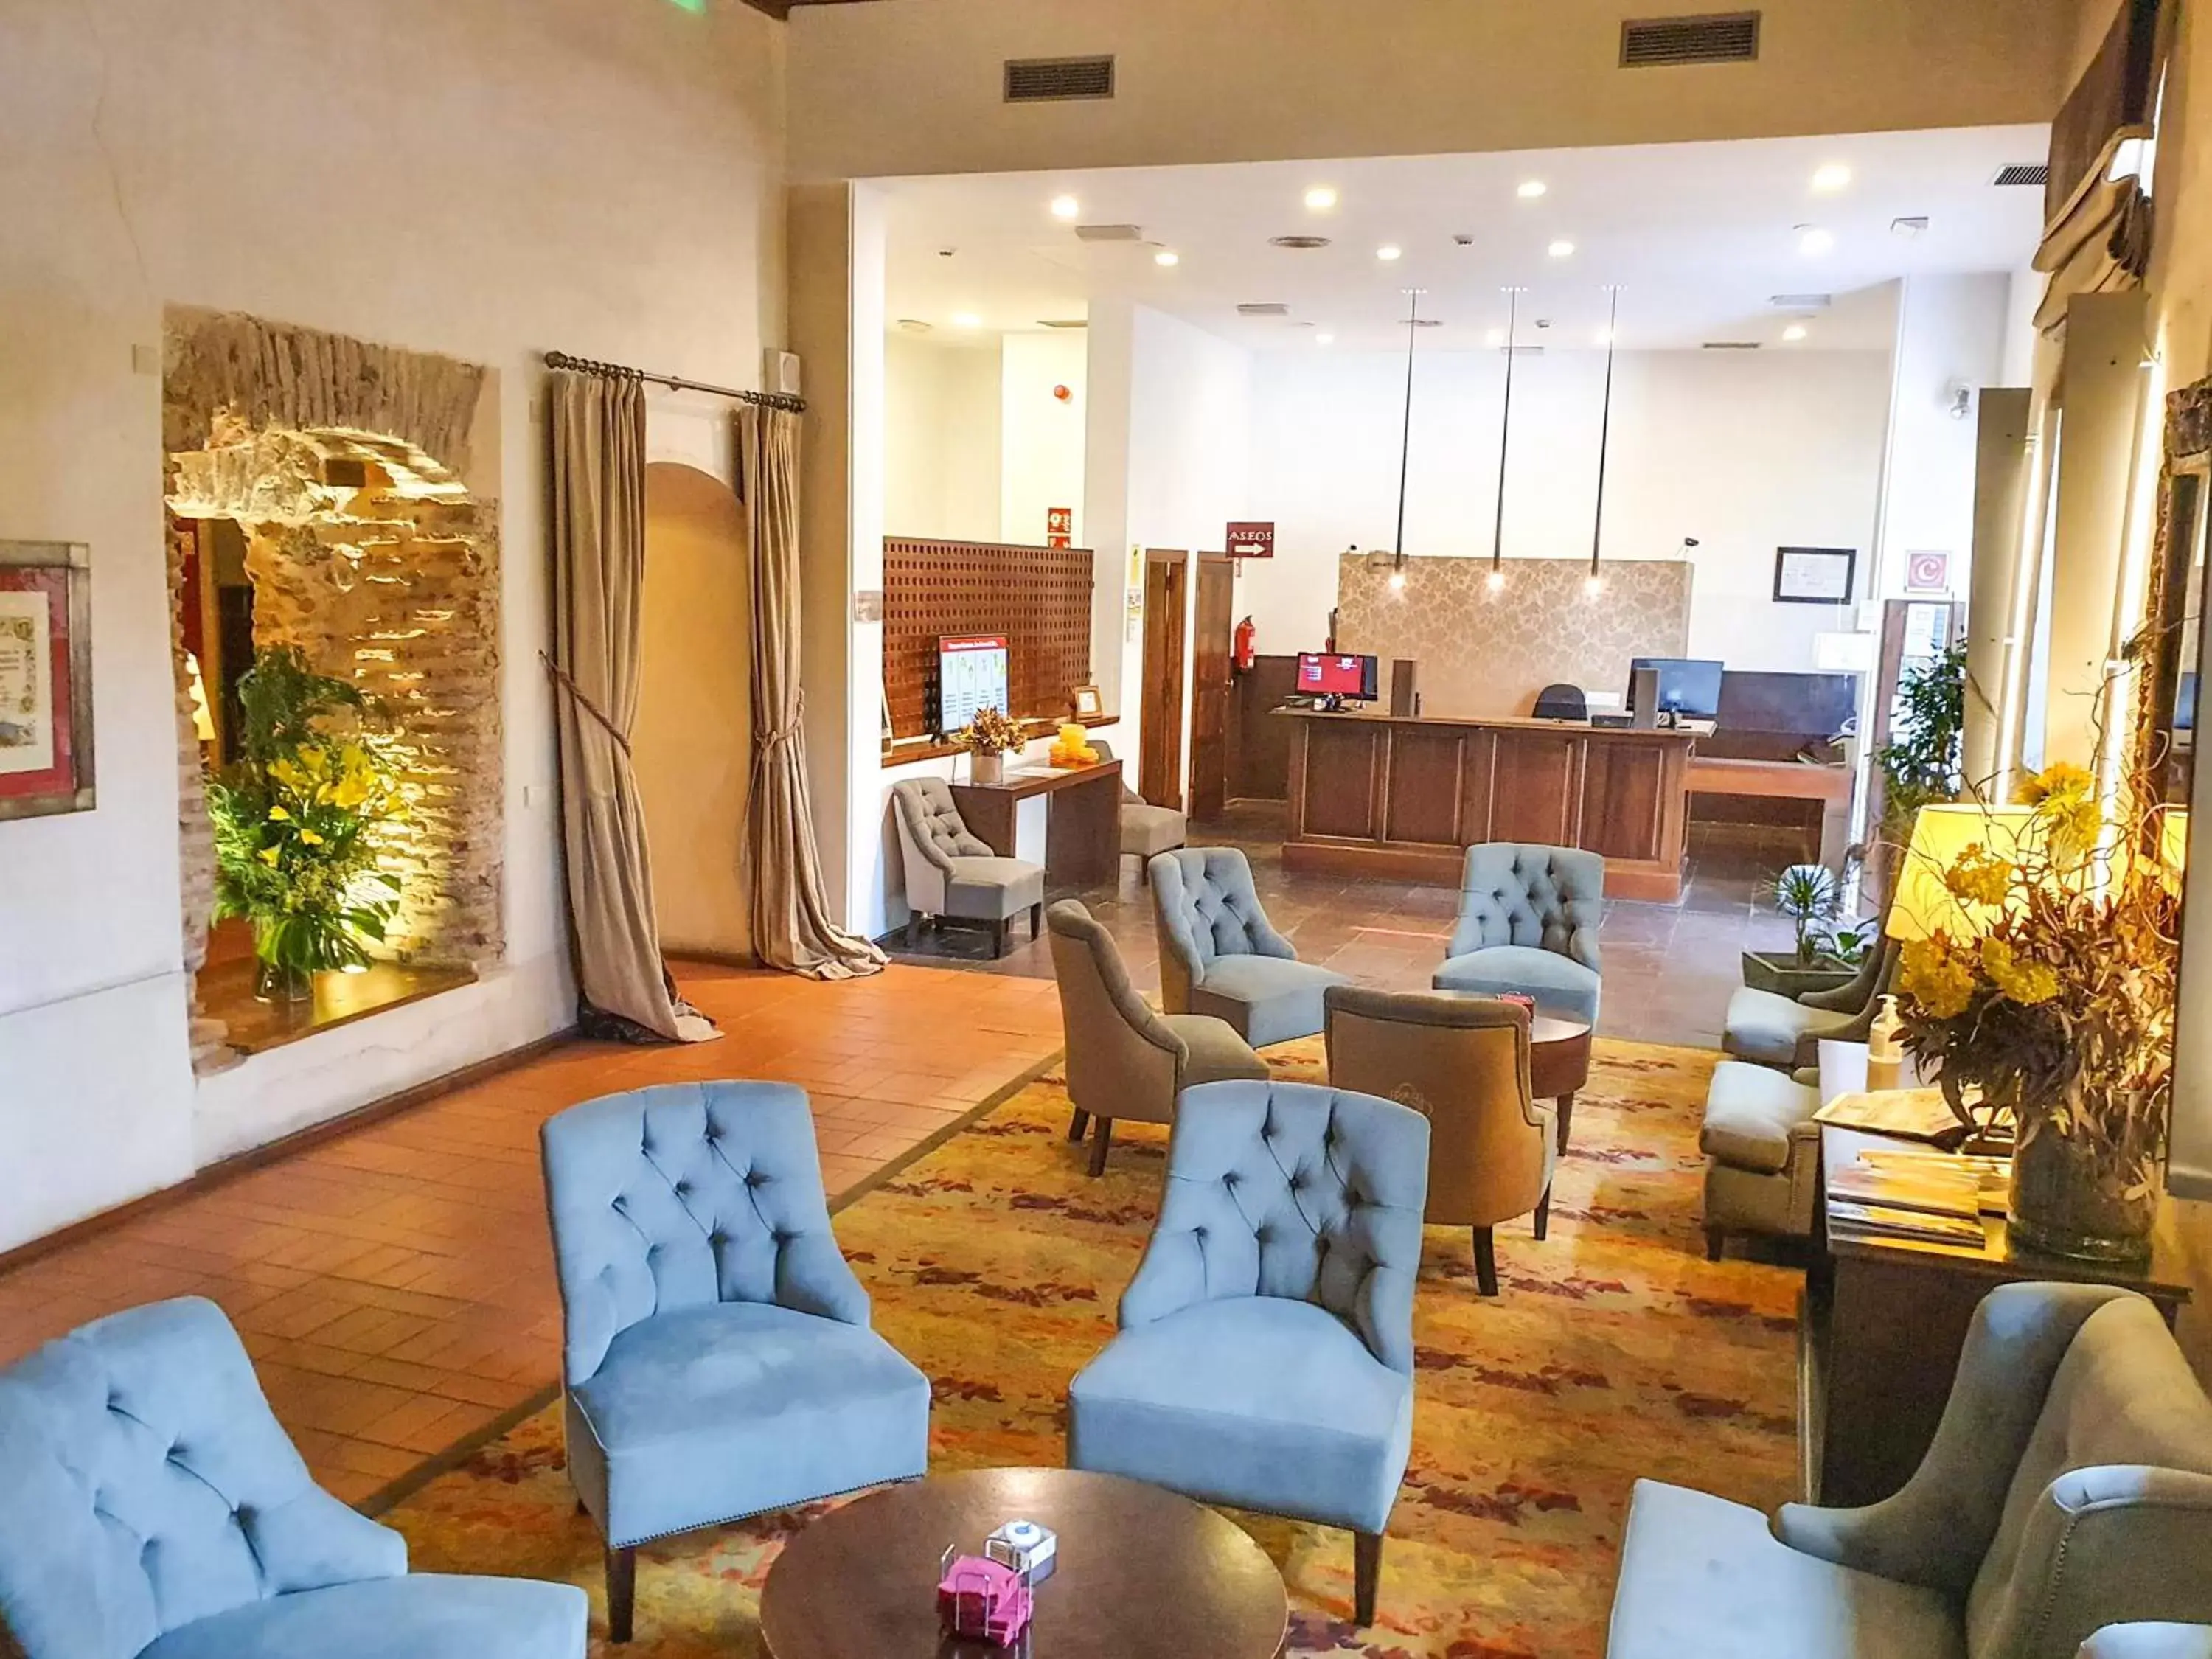 Lobby or reception in Hotel San Antonio el Real